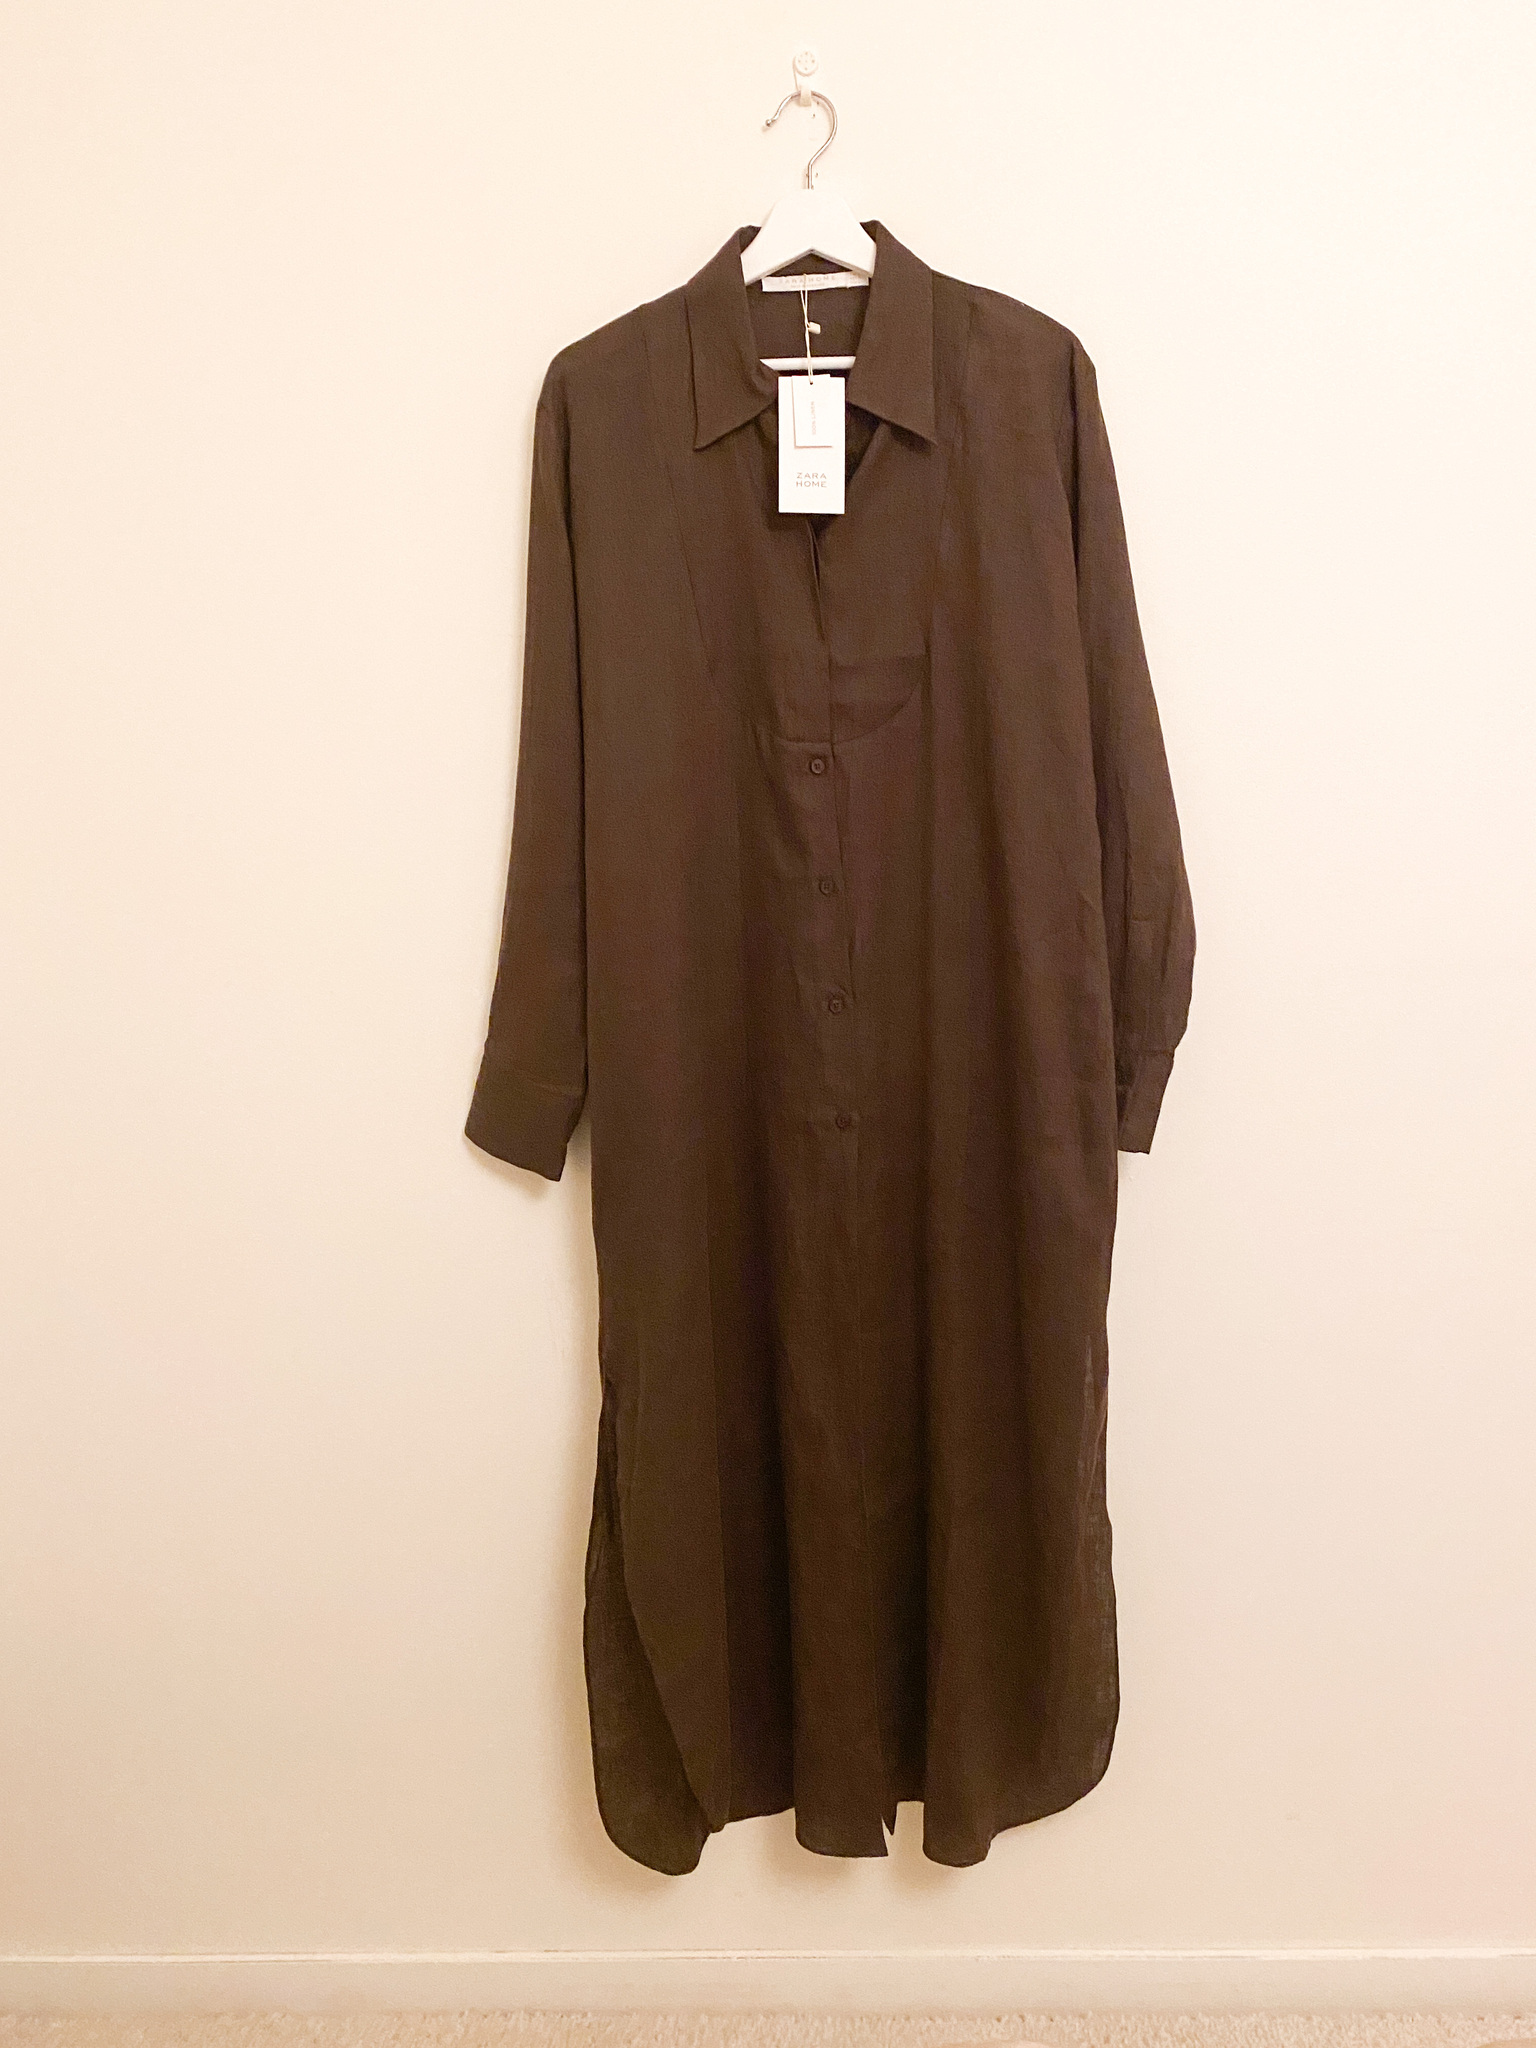 ZARA Home Brown Linen Shirt Dress (L)